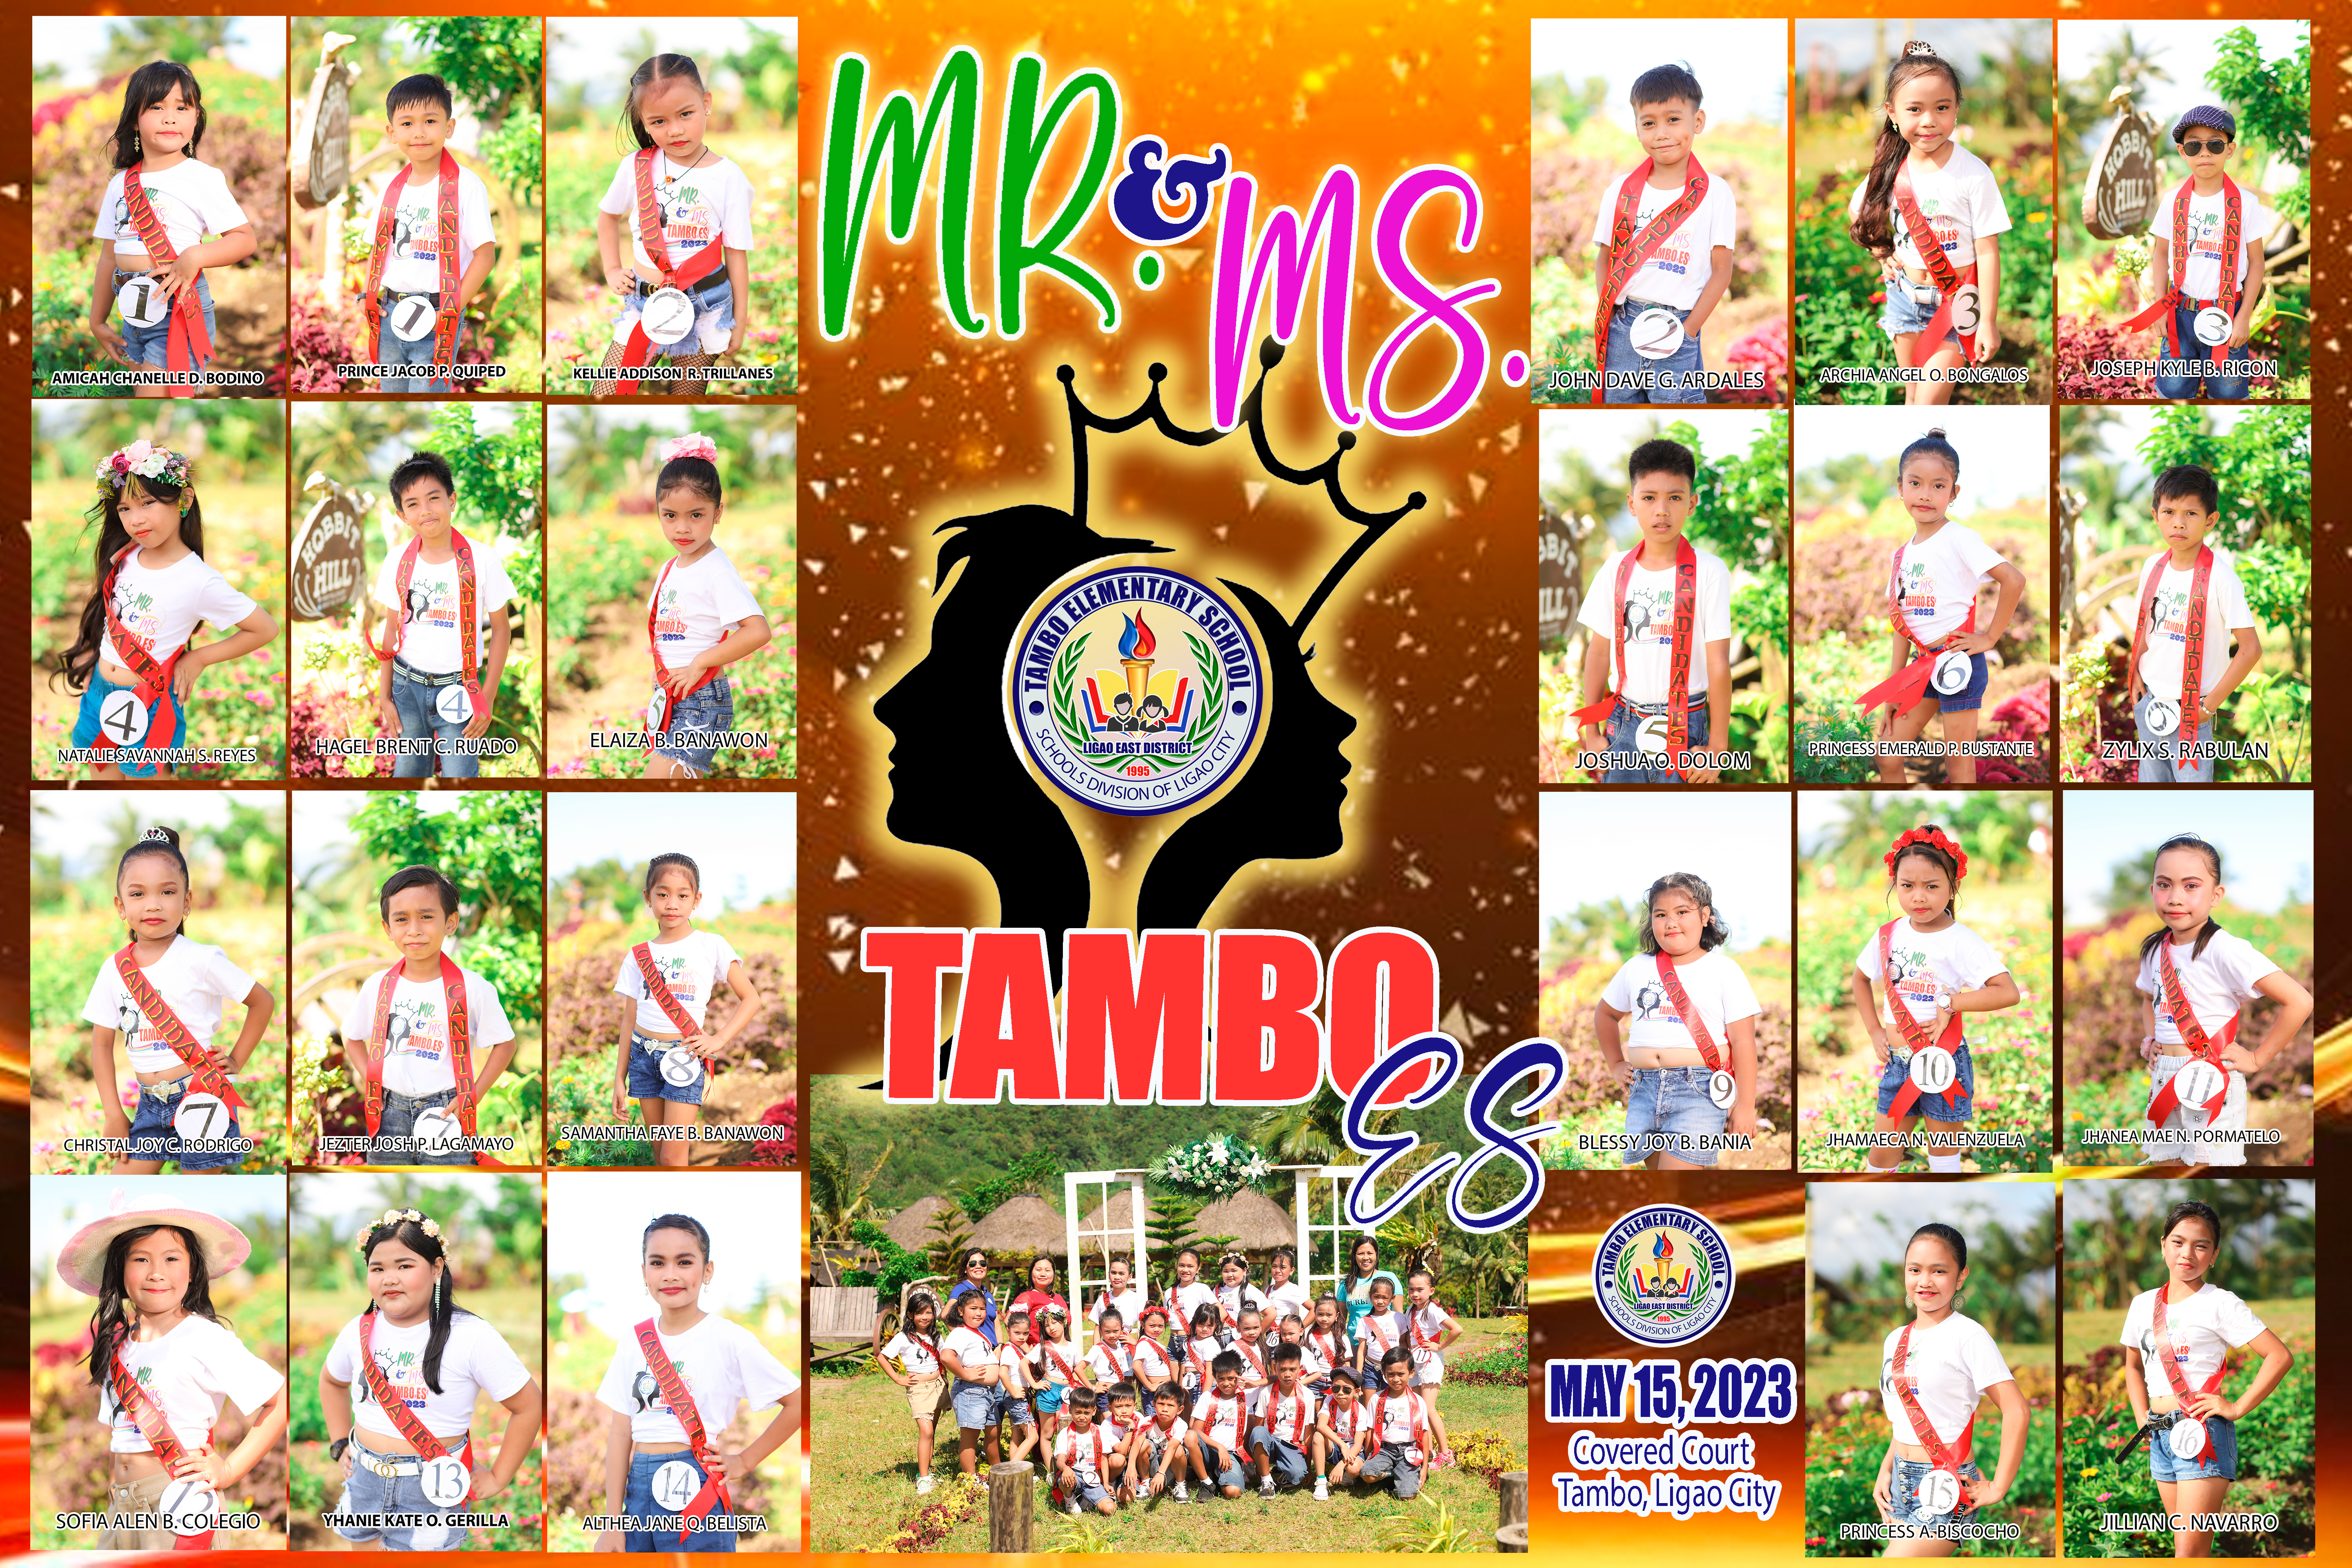 Mr and ms tambo tarp 2023